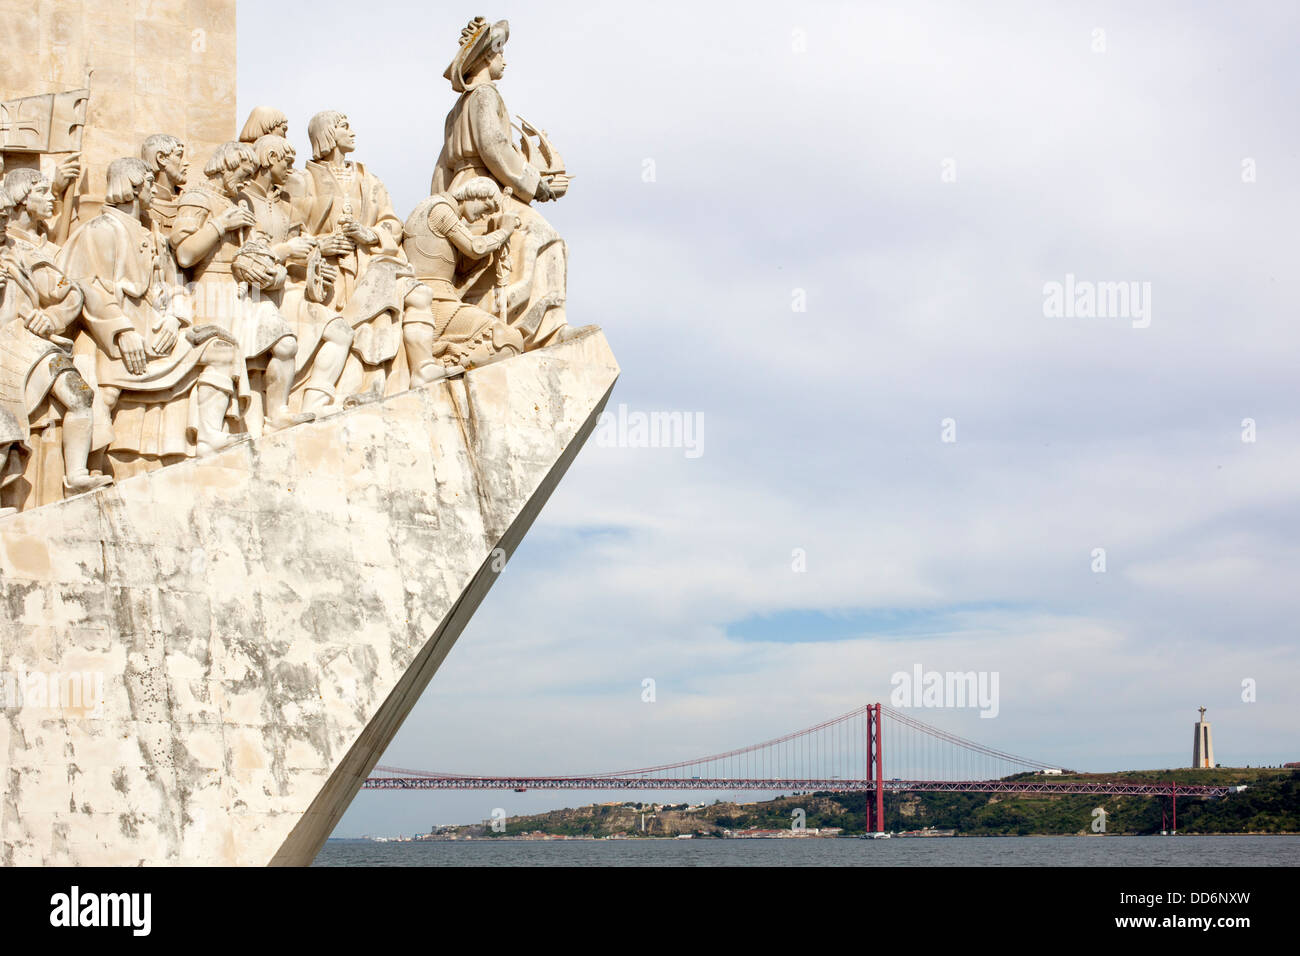 Padrao dos Descobrimentos, Lisbon, Portugal, Europe Stock Photo